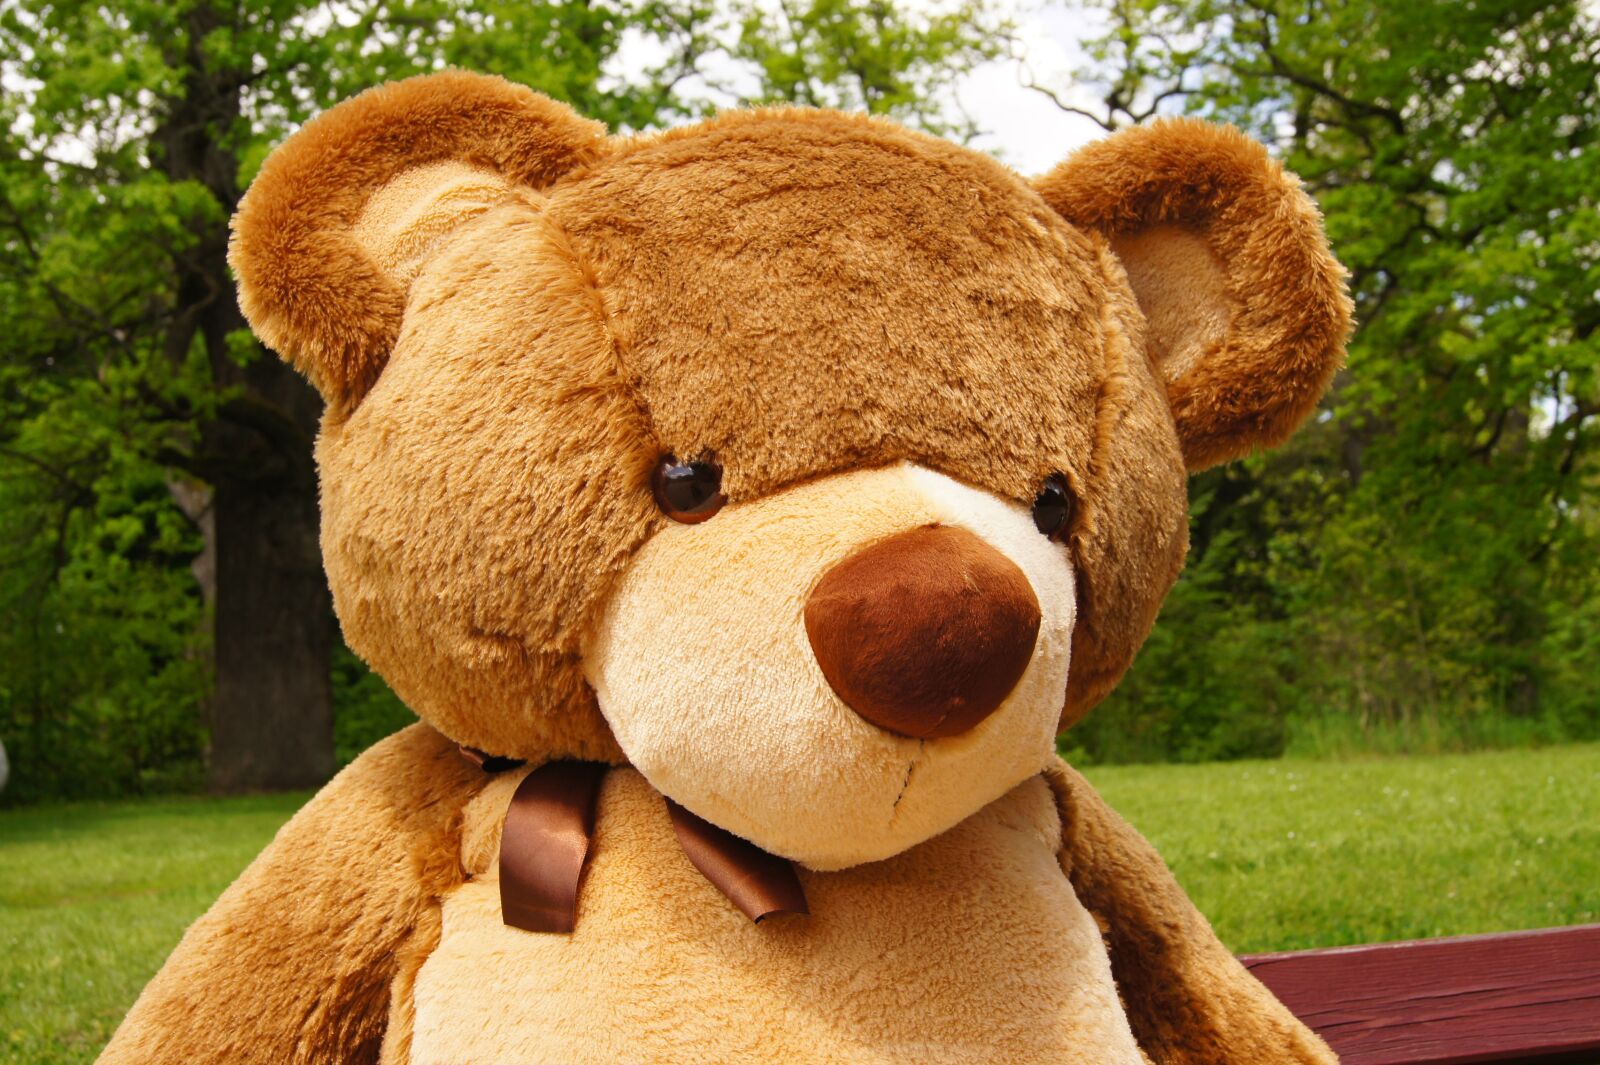 Sony SLT-A33 sample photo. Teddy bear, plush, nature photography